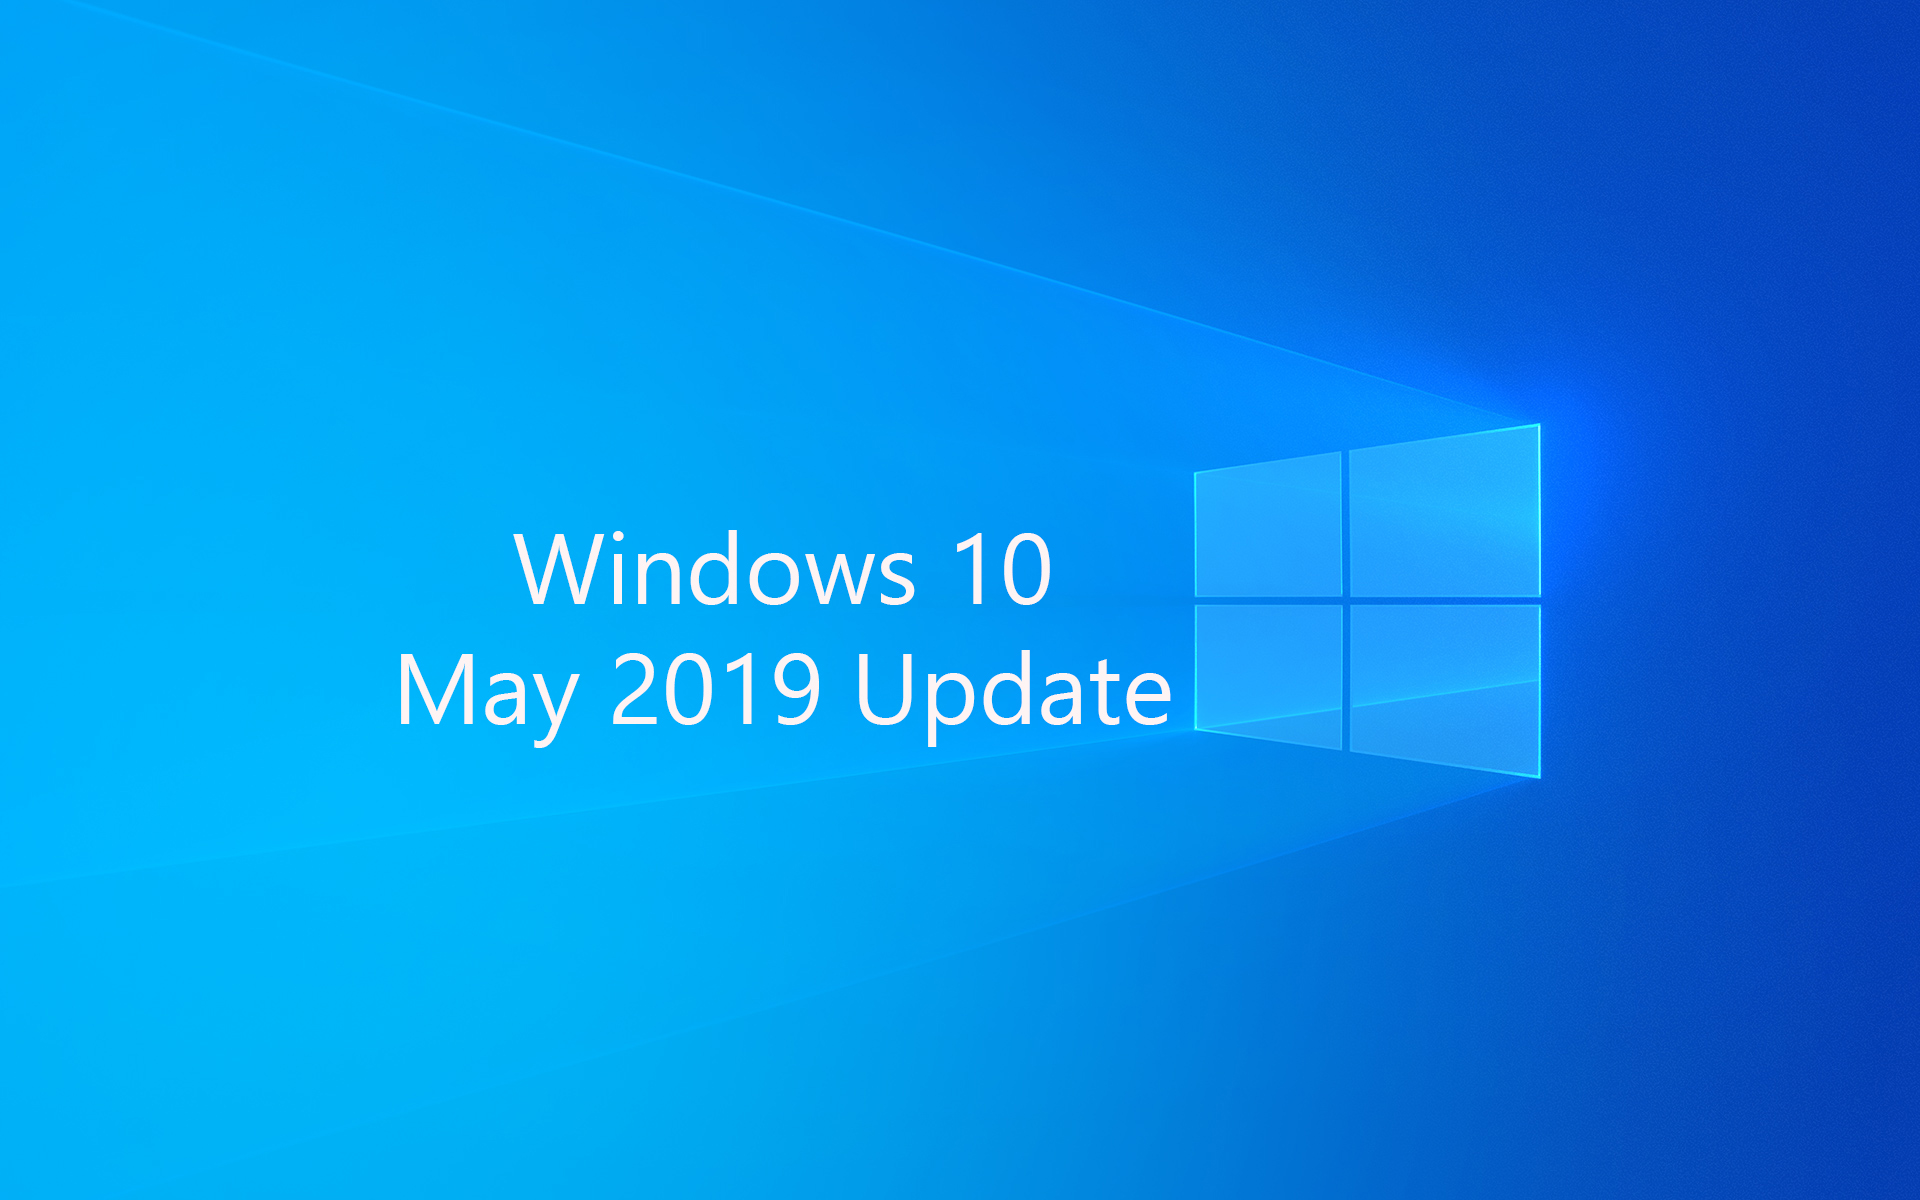 Download Windows 10 1903 19H1 (OS Build 18362.30) Chính Thức